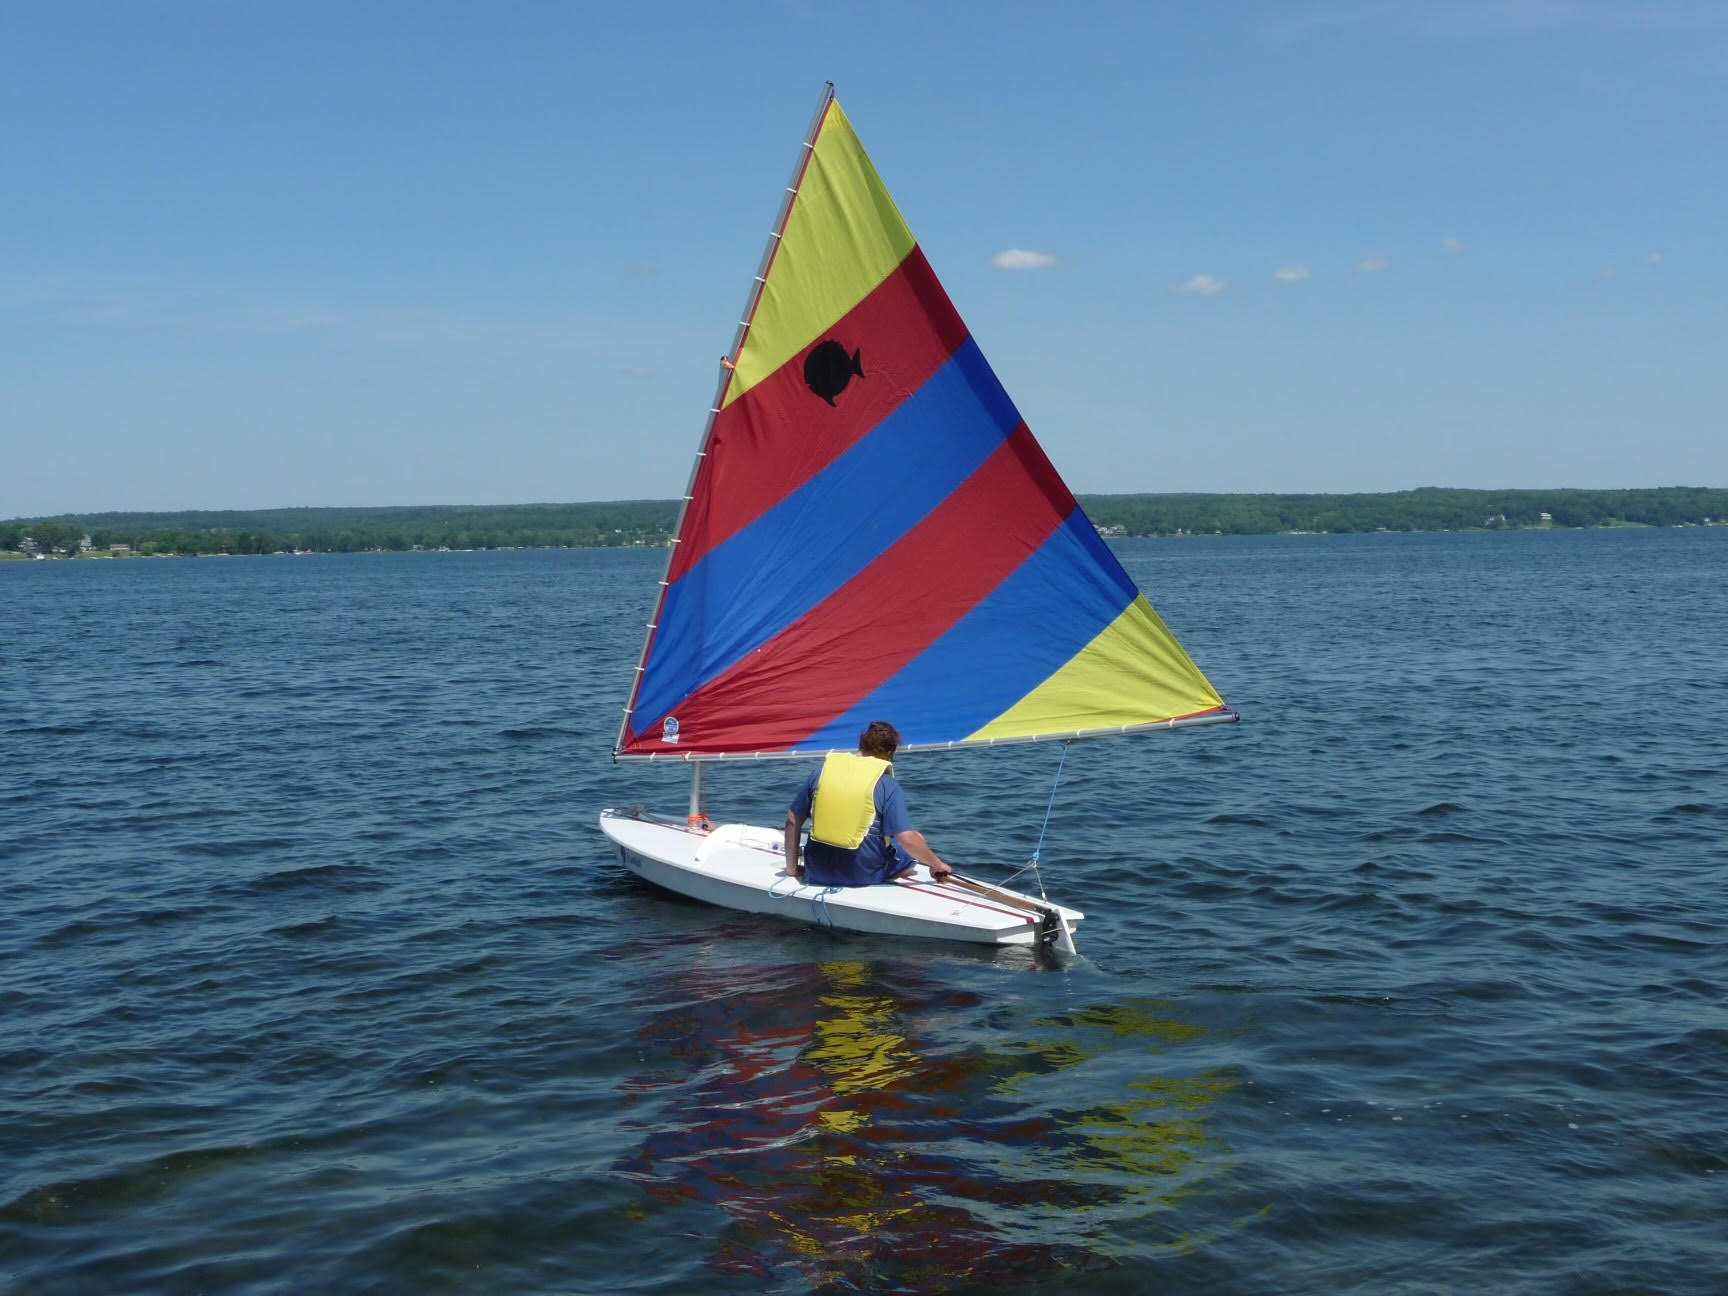 sunfish sailboat for sale long island